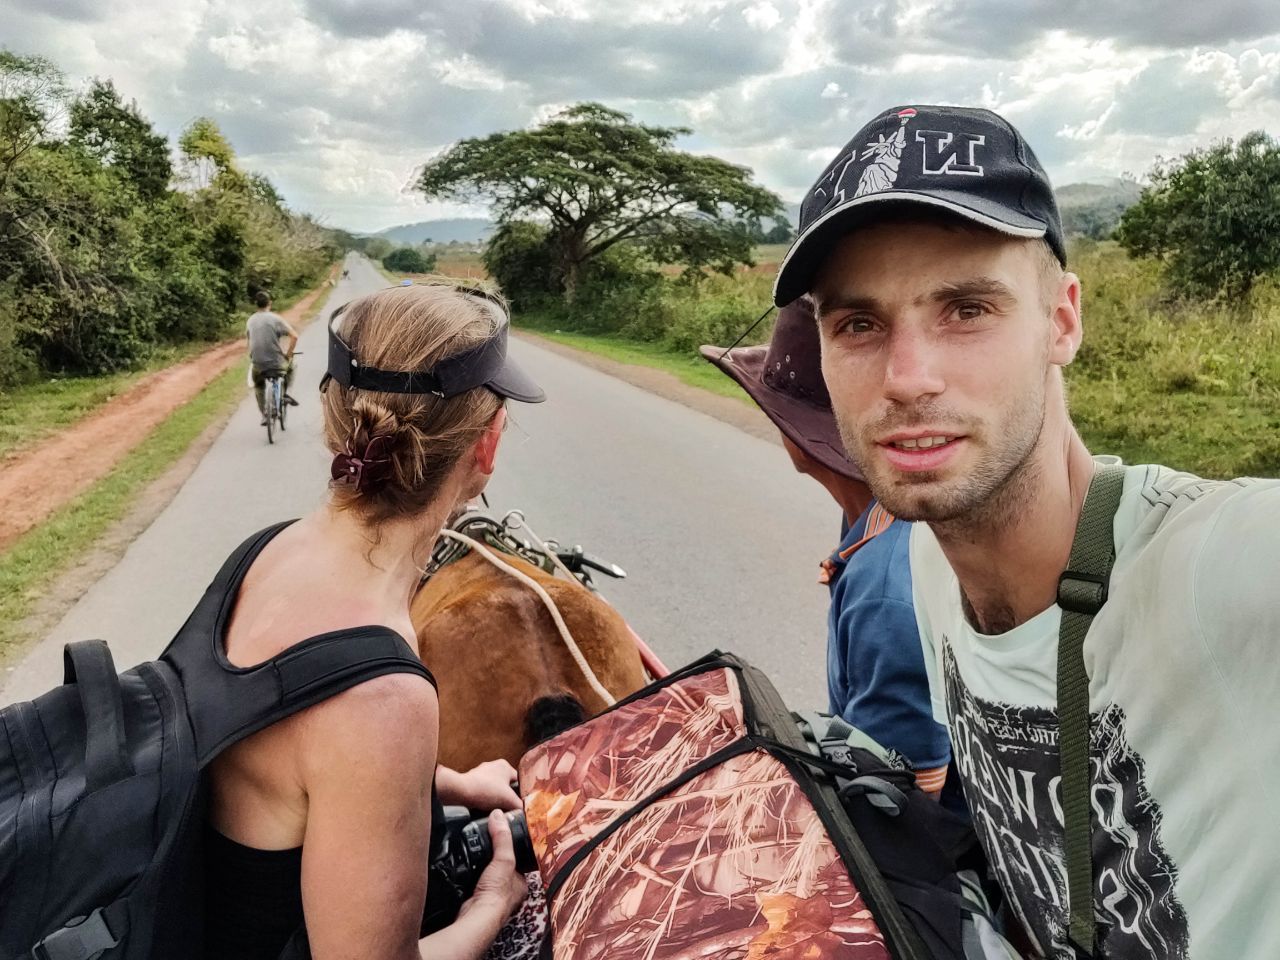 по дороге в Долину Виньялес Виньялес, Куба